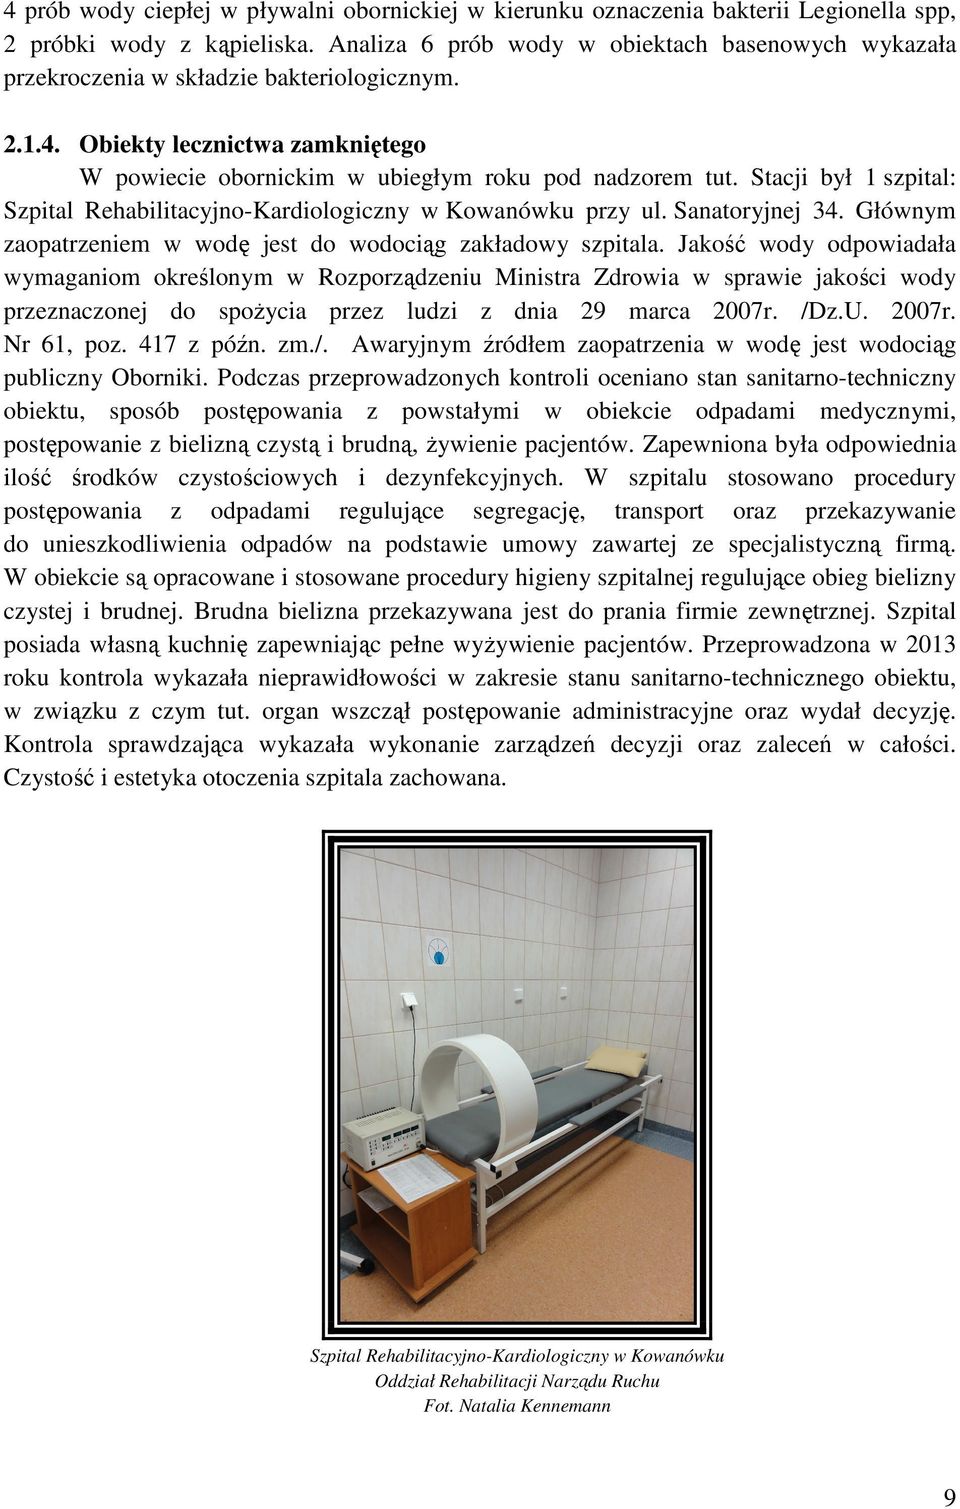 Stacji był 1 szpital: Szpital Rehabilitacyjno-Kardiologiczny w Kowanówku przy ul. Sanatoryjnej 34. Głównym zaopatrzeniem w wodę jest do wodociąg zakładowy szpitala.